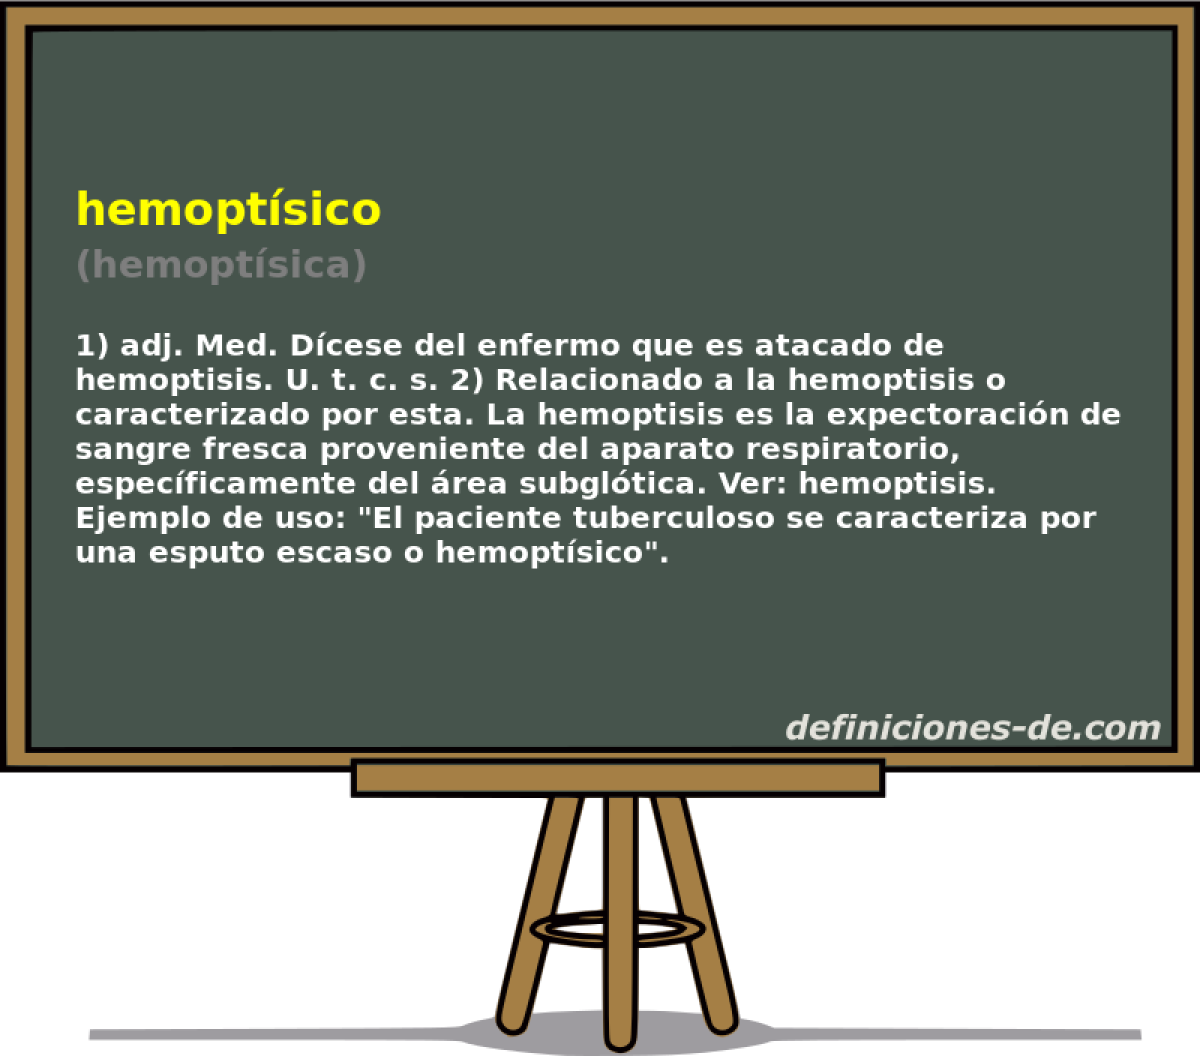 hemoptsico (hemoptsica)